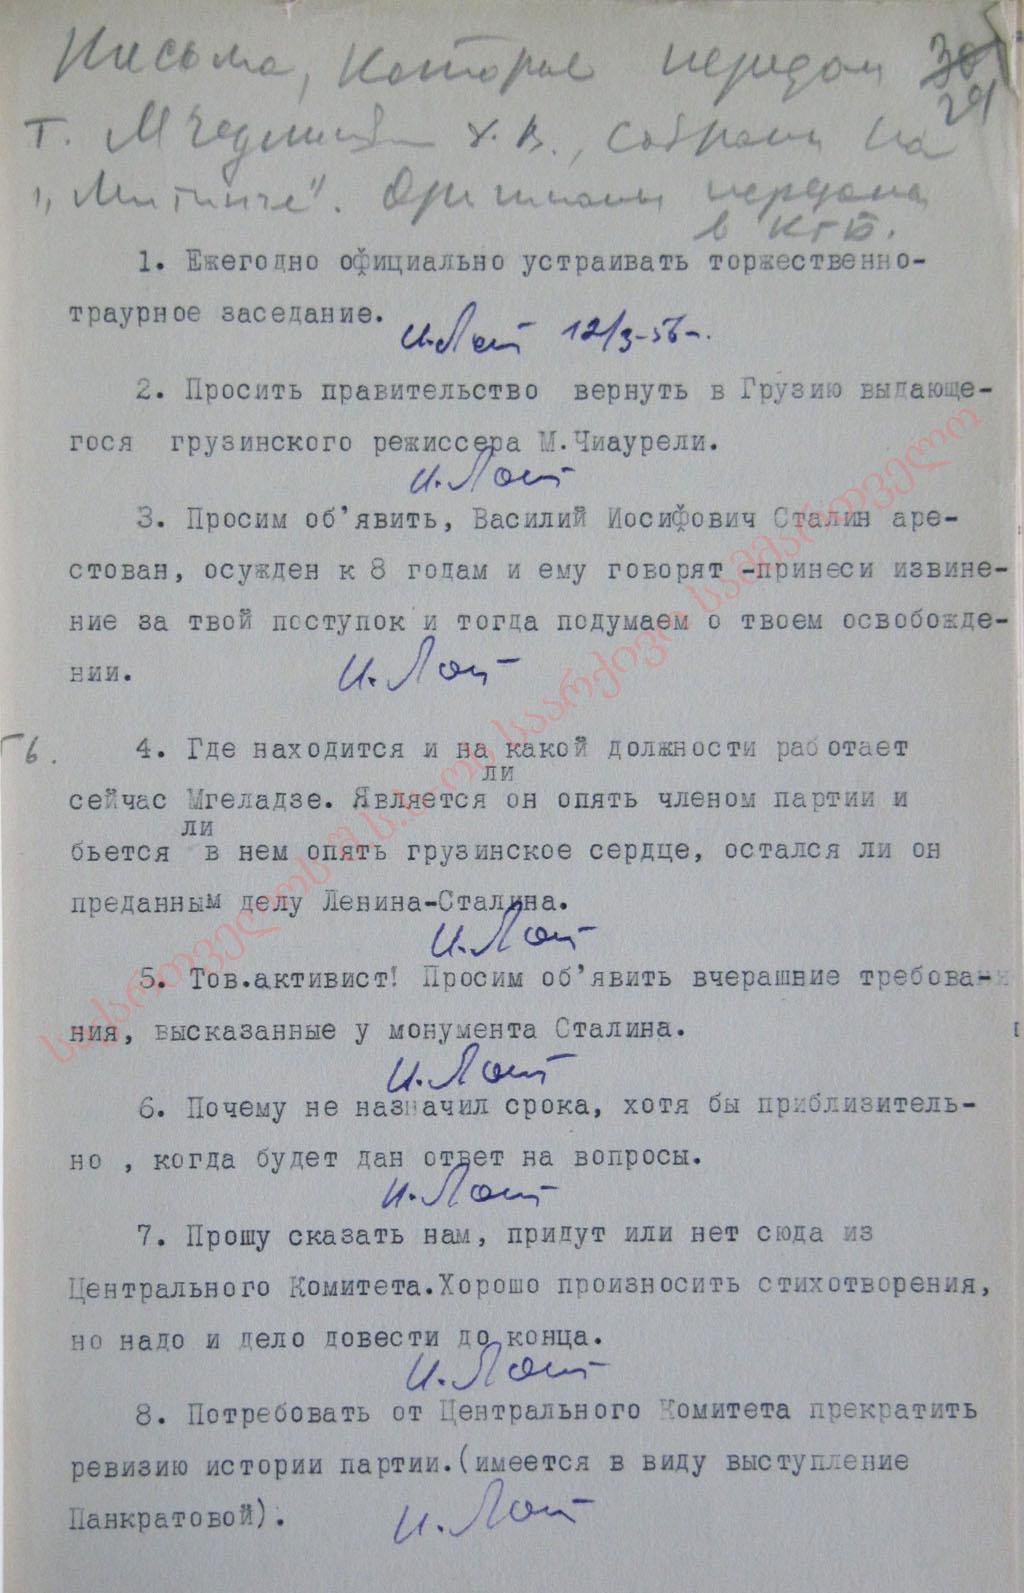 Письма и записки участников митингов от 8-10 марта 1956 г.